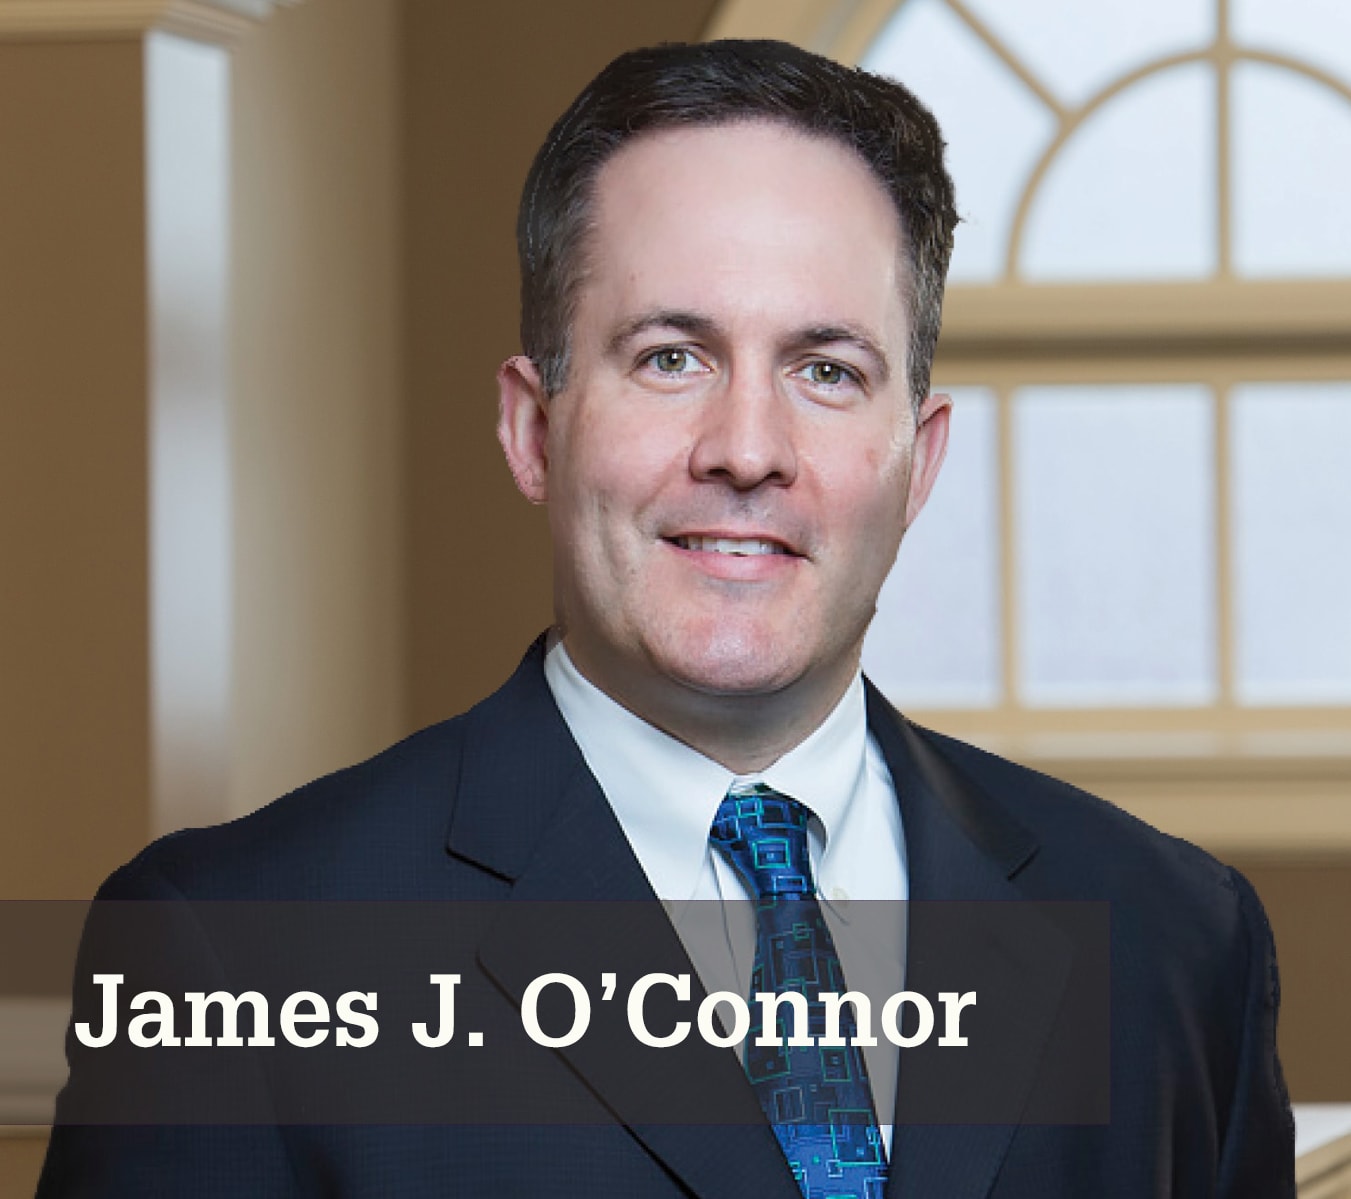 James J. O'Connor